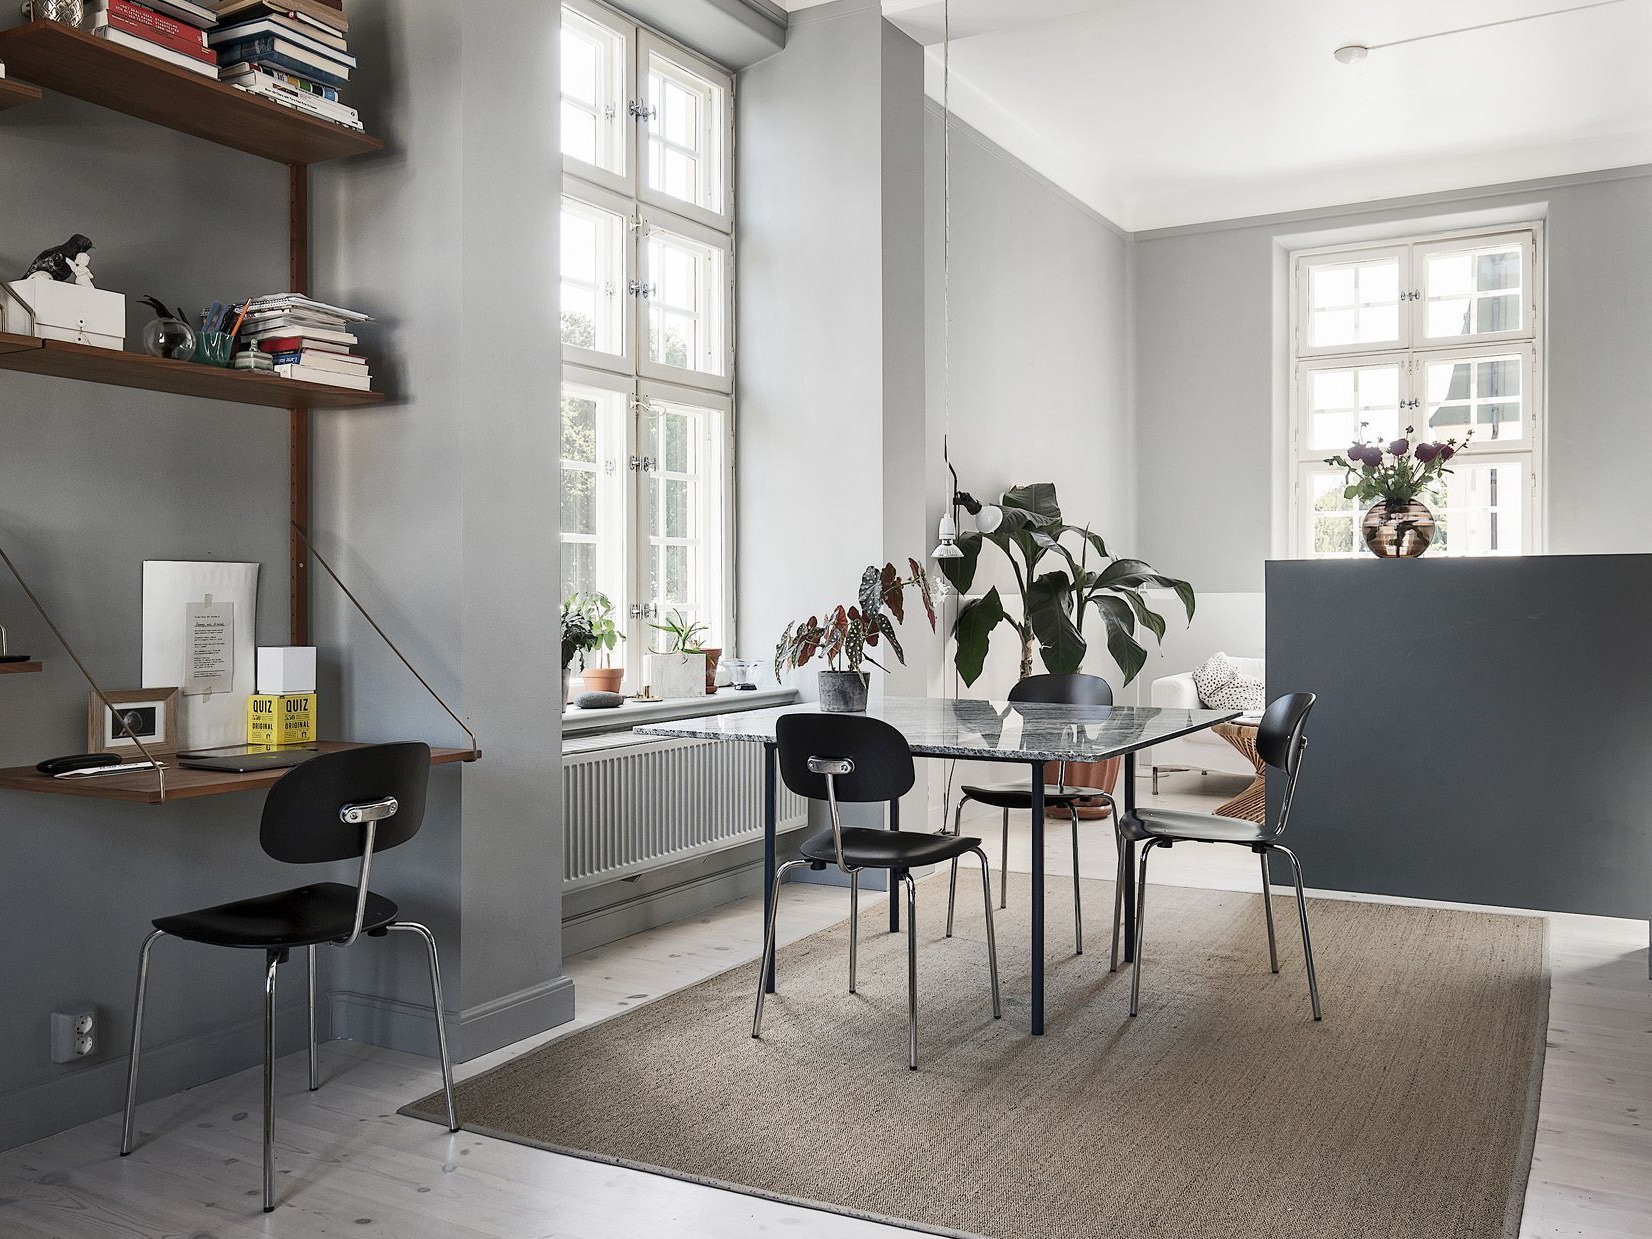 斯德哥尔摩浅灰色公寓 冷静简约的北欧范儿家居